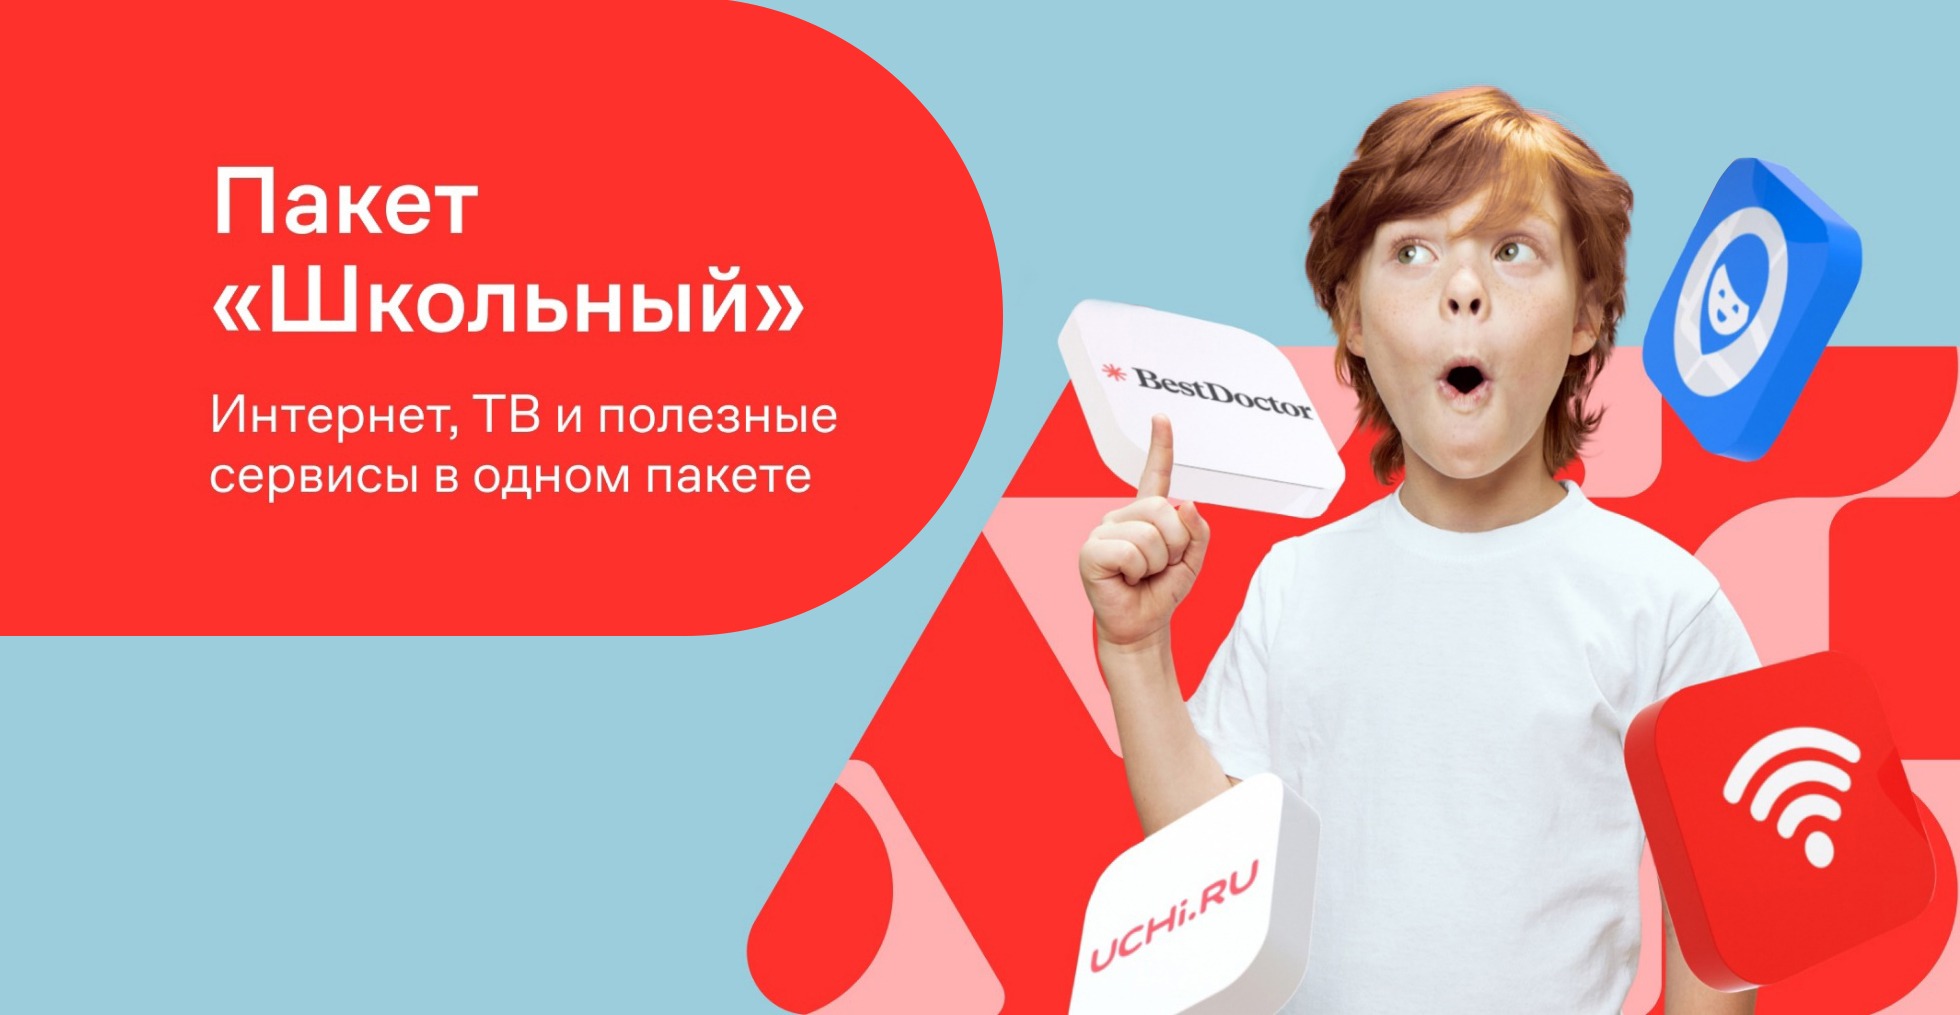 Дом.ру и цифровой центр «IT-CUBE» обучили детей безопасному поведению в интернете